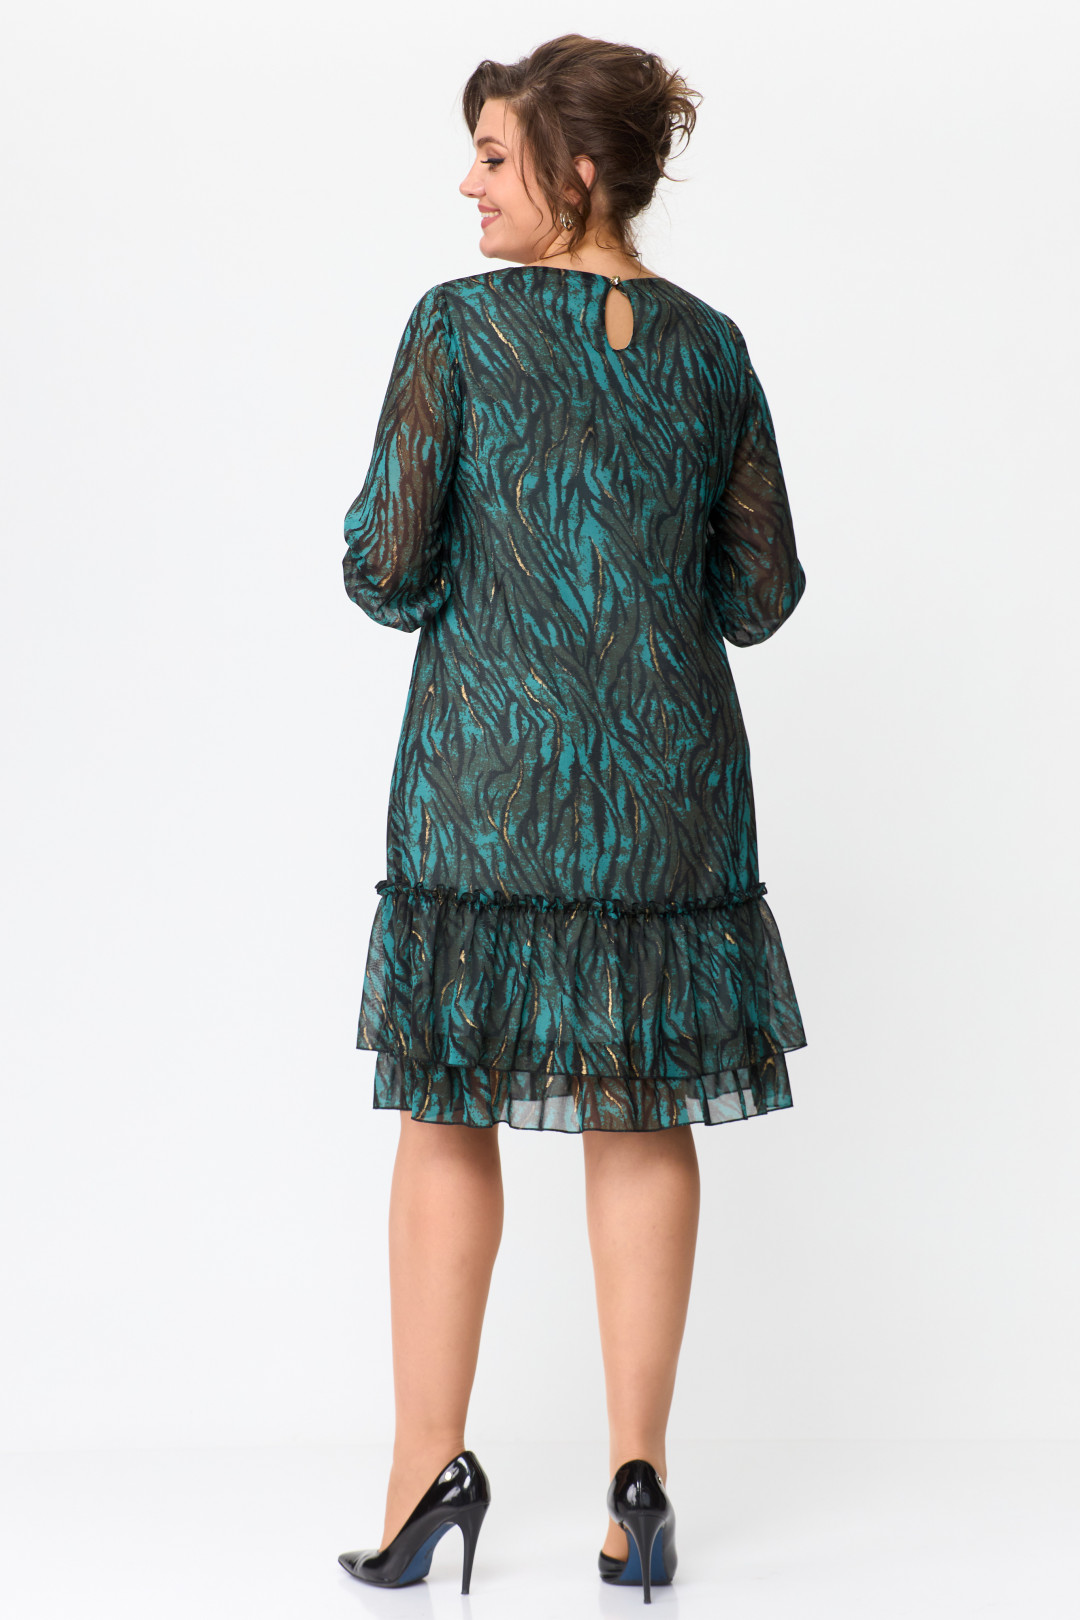 Платье Мода-Версаль 2369 черно-зеленый